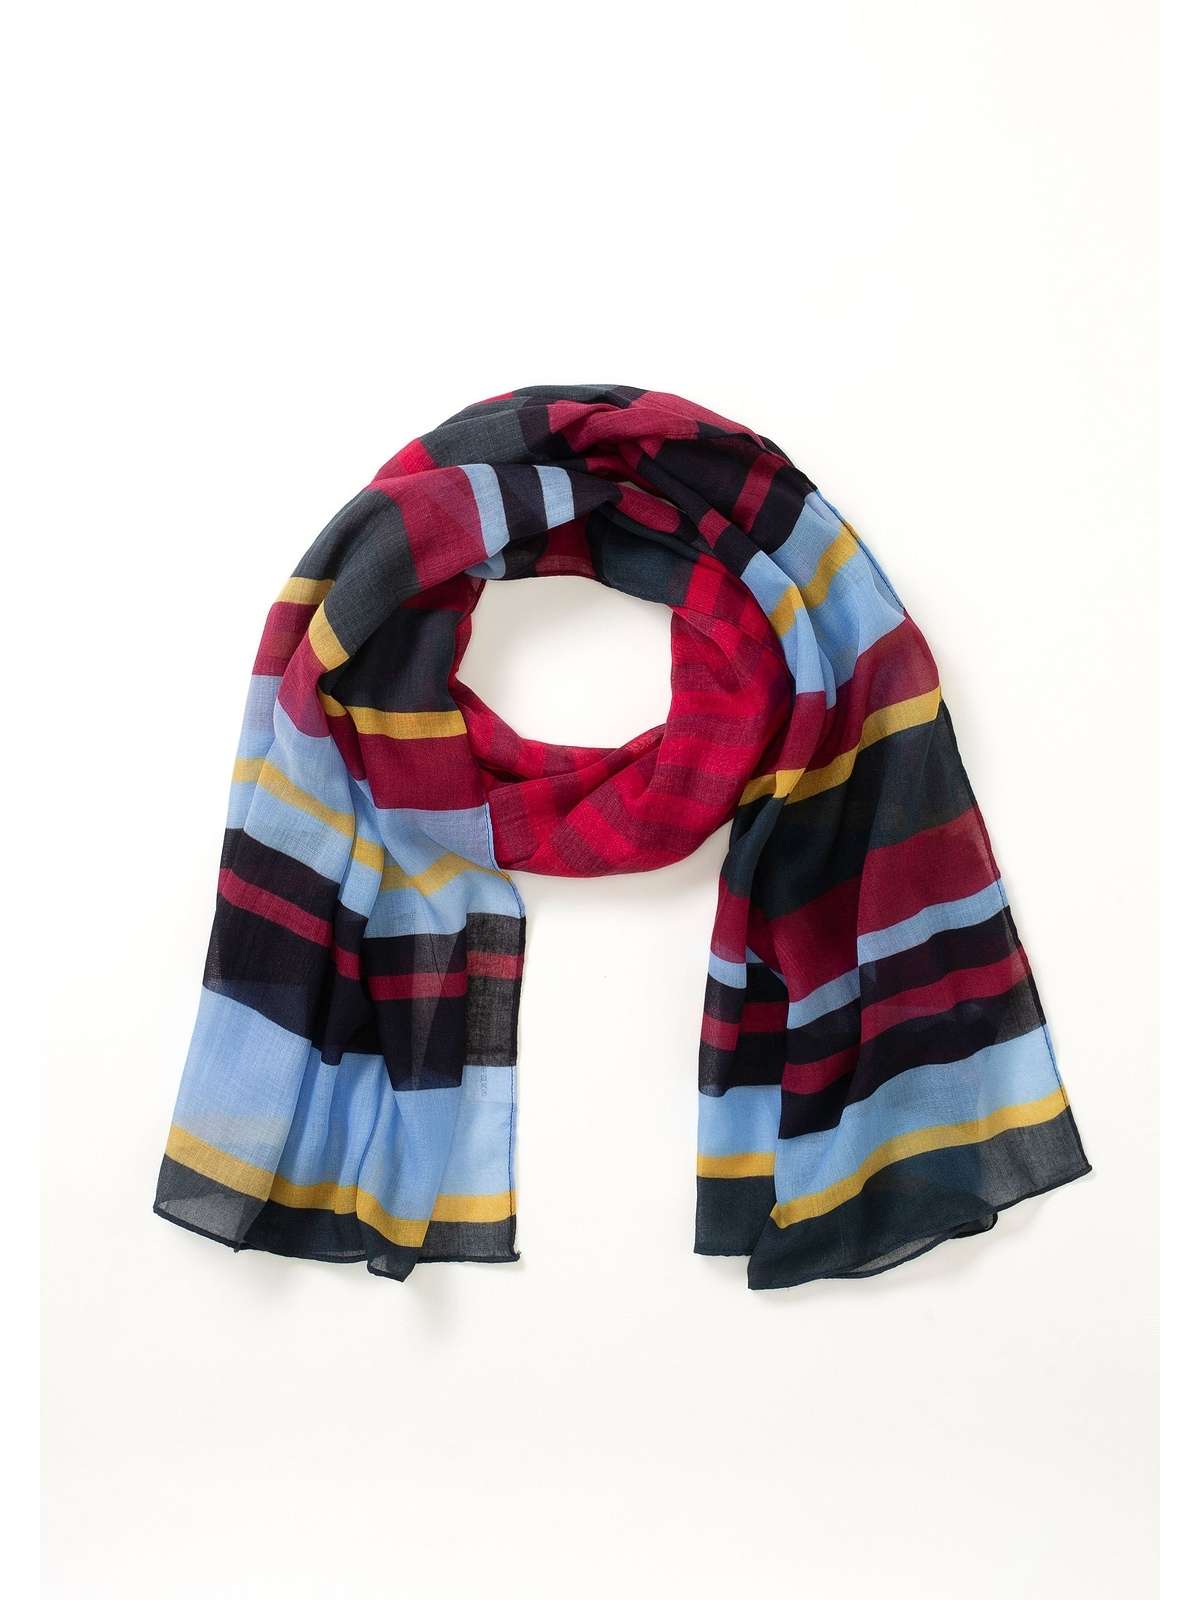 Модный шарф с цветной блокировкой, ок. 70х180 см.